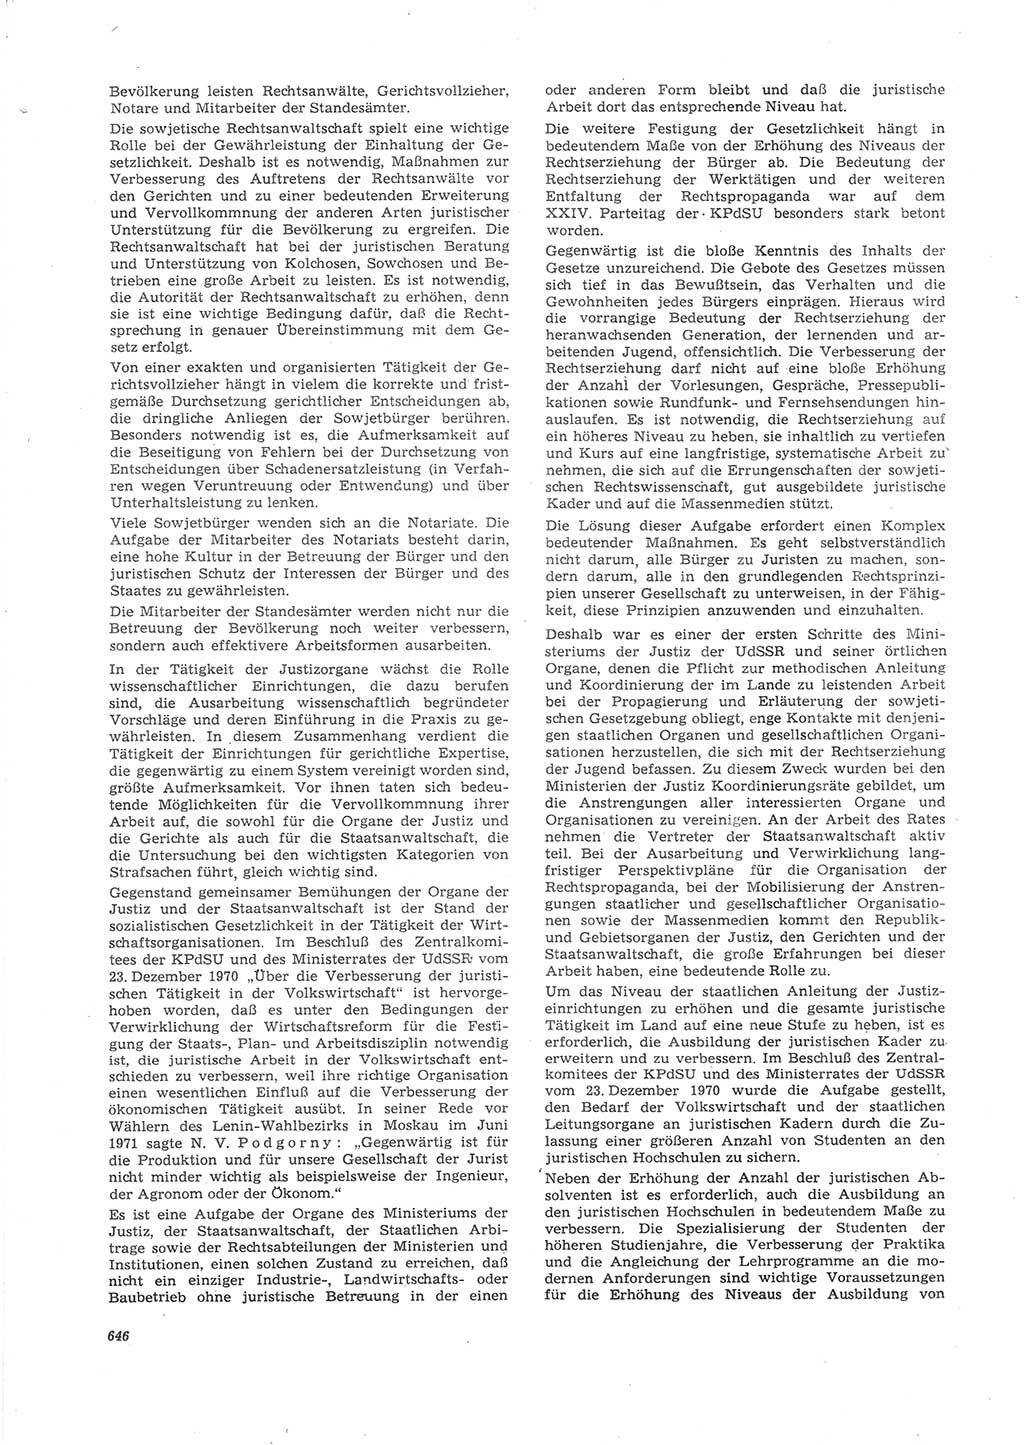 Neue Justiz (NJ), Zeitschrift für Recht und Rechtswissenschaft [Deutsche Demokratische Republik (DDR)], 26. Jahrgang 1972, Seite 646 (NJ DDR 1972, S. 646)